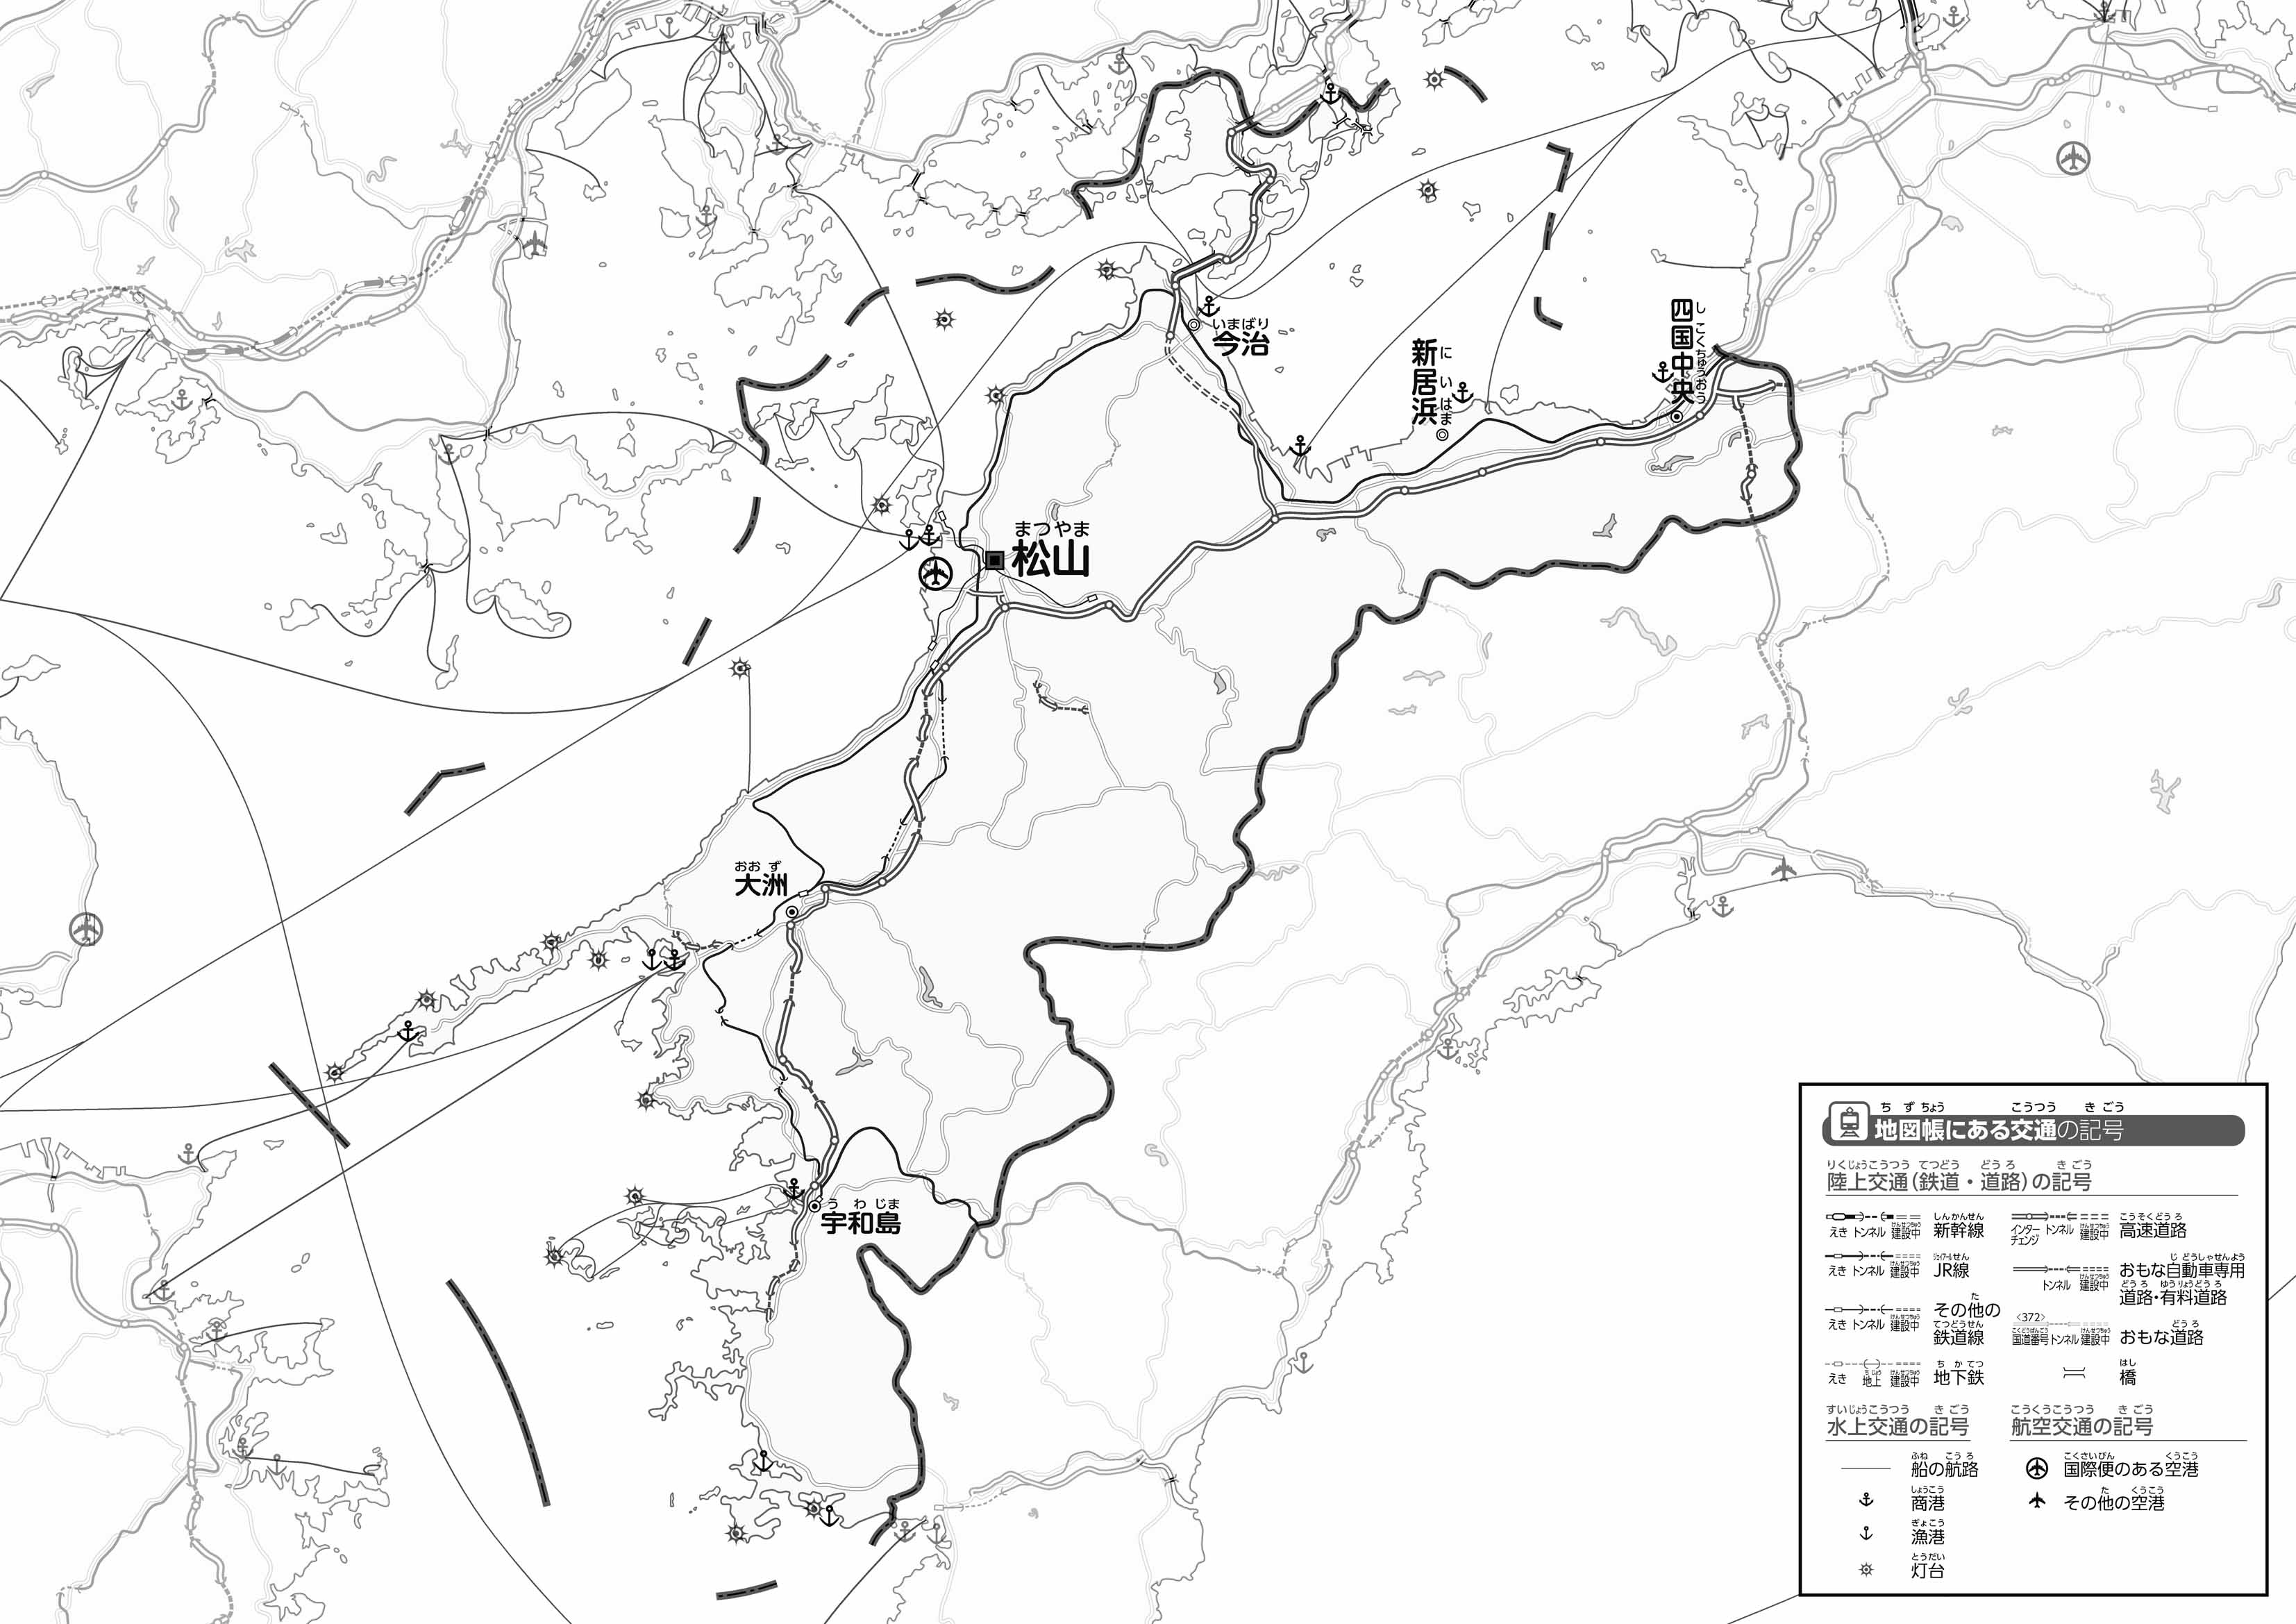 愛媛県土地利用規制現況図 地図10枚組 昭和49年 愛媛県 1974 函入り 地図 マップ